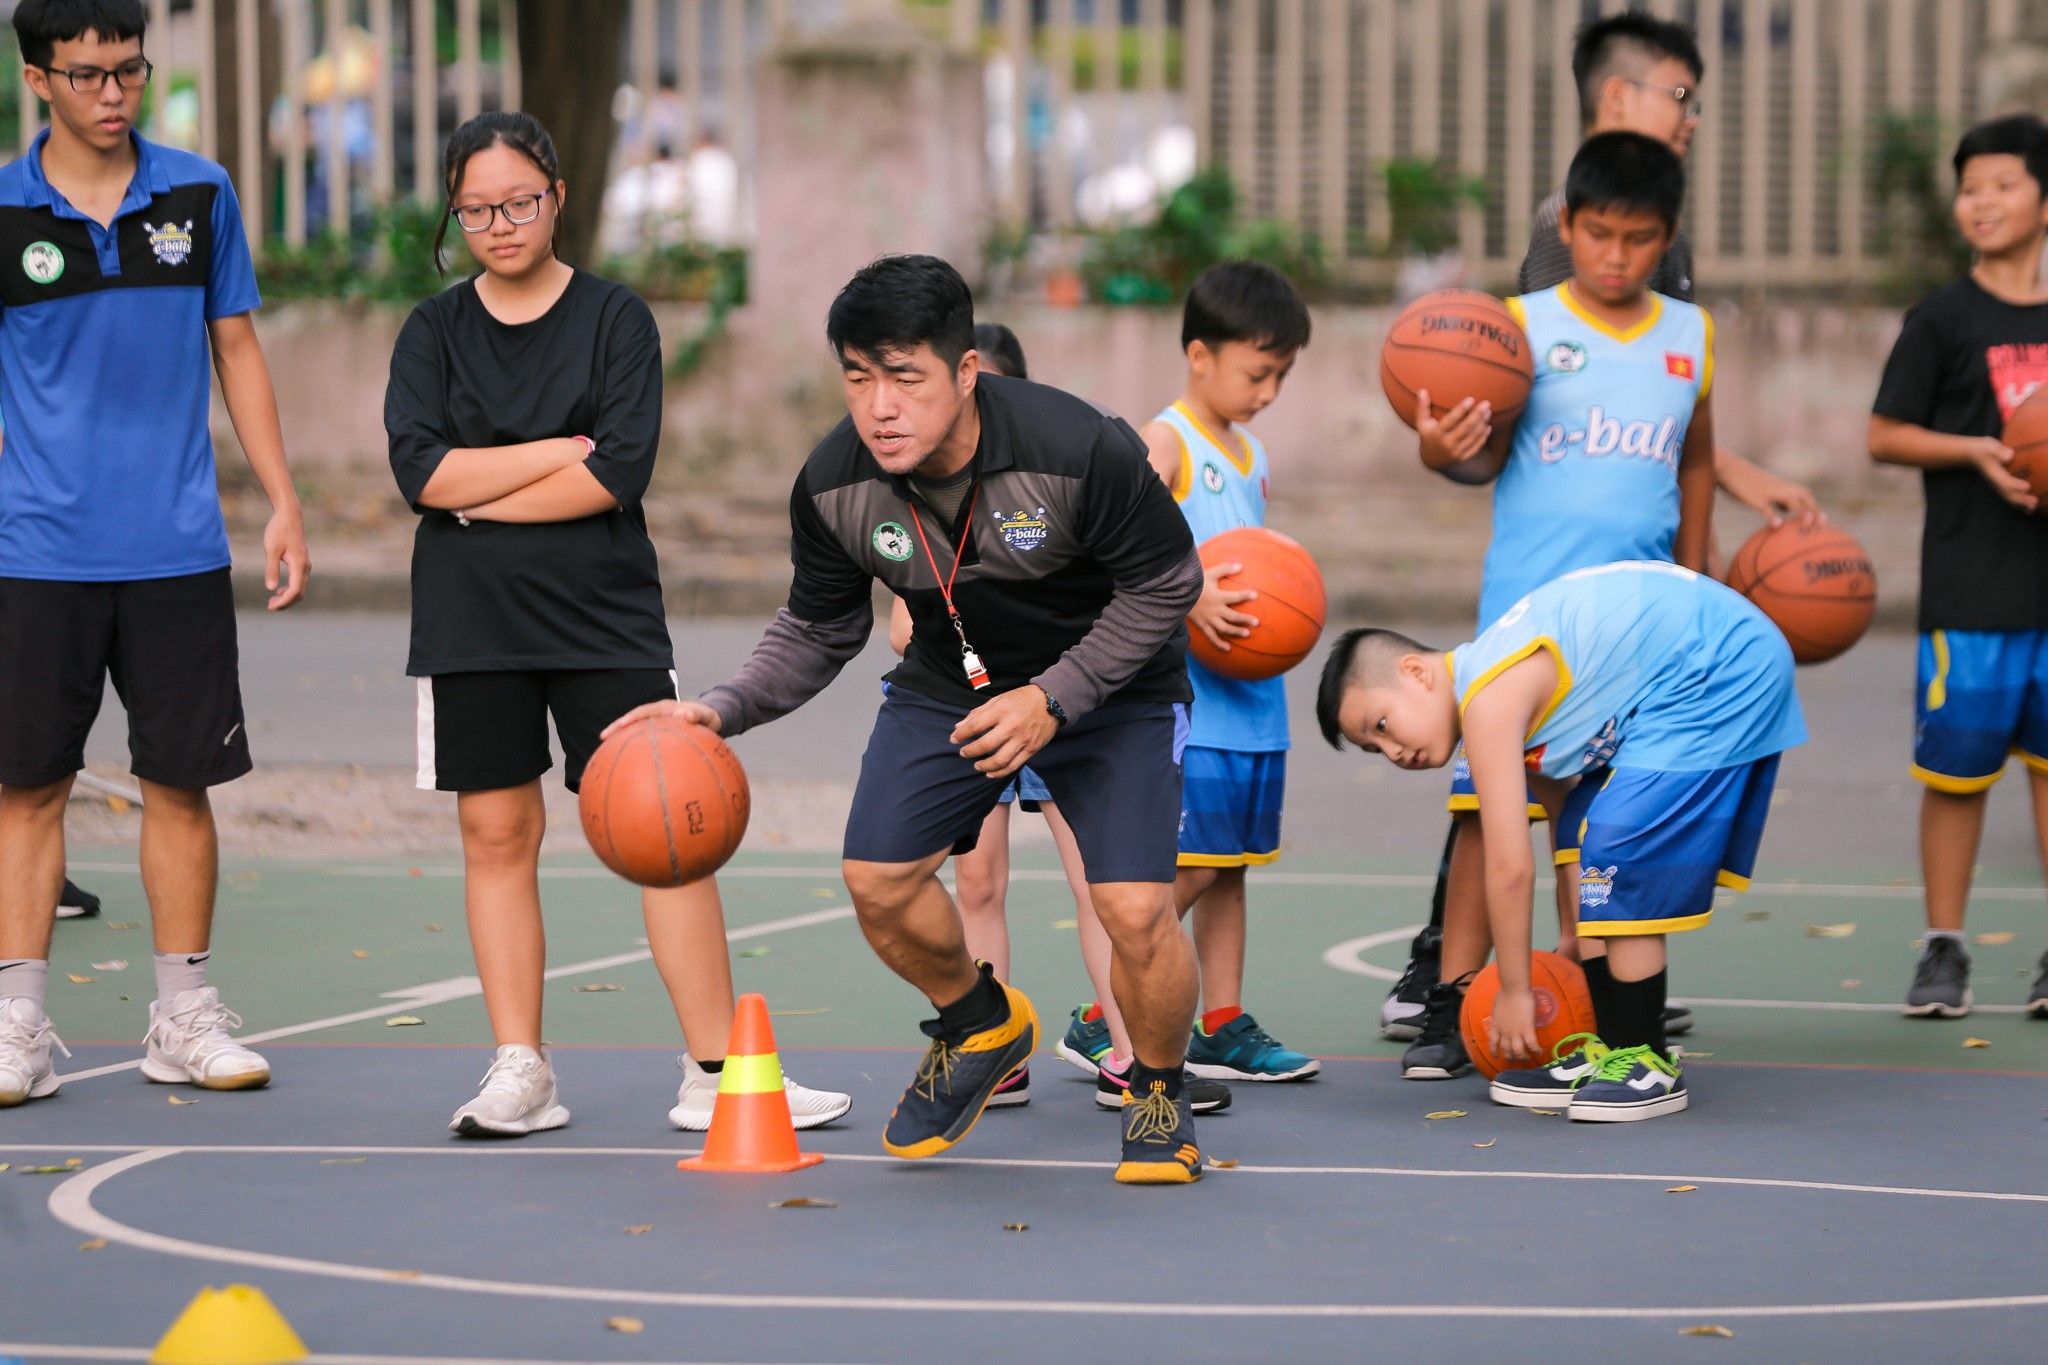 lớp học bóng rổ tiếng Anh dành cho trẻ em tại TPHCM